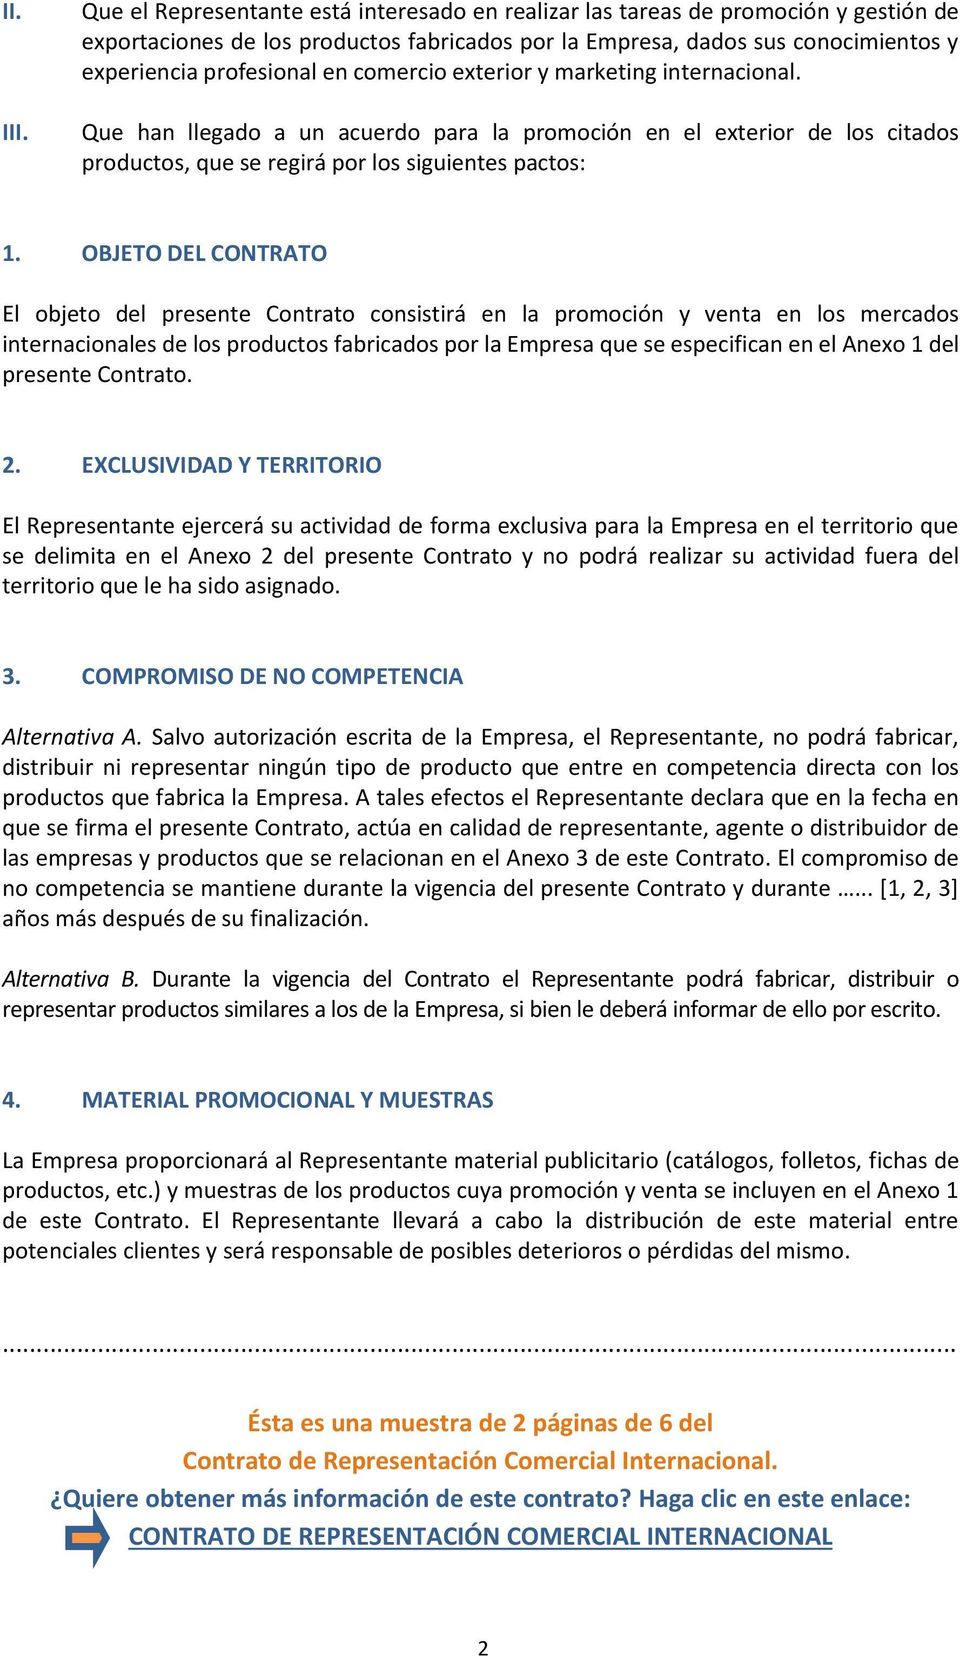 MODELO DE CONTRATO DE REPRESENTACIÓN COMERCIAL INTERNACIONAL - PDF  Descargar libre